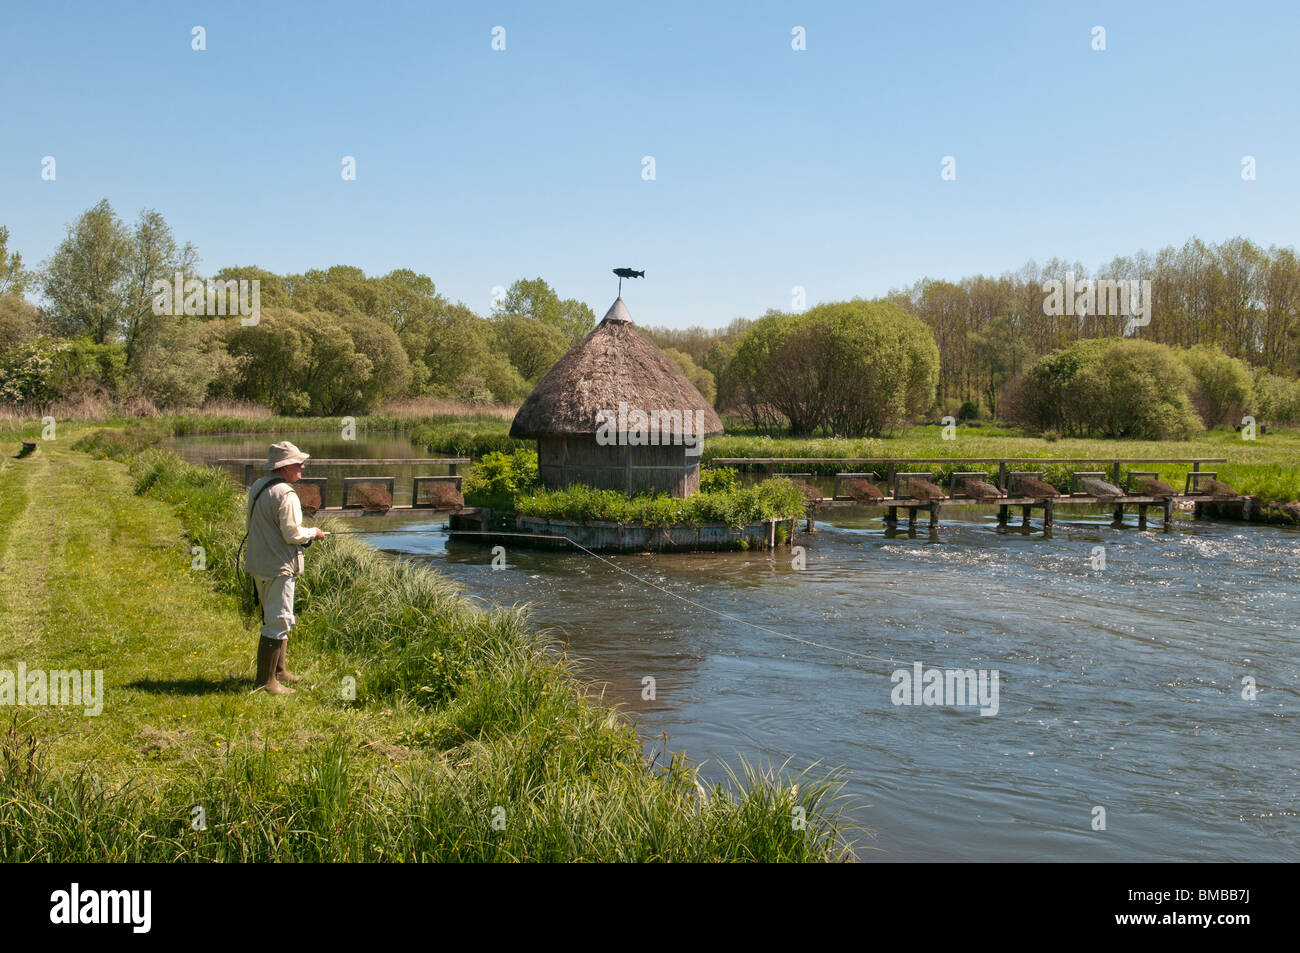 Fliegenfischen Sie auf dem Fluss-Test in Longstock, Hampshire, England. Reusen und einer Gillies schilfgedeckten Hütte zu sehen. Stockfoto